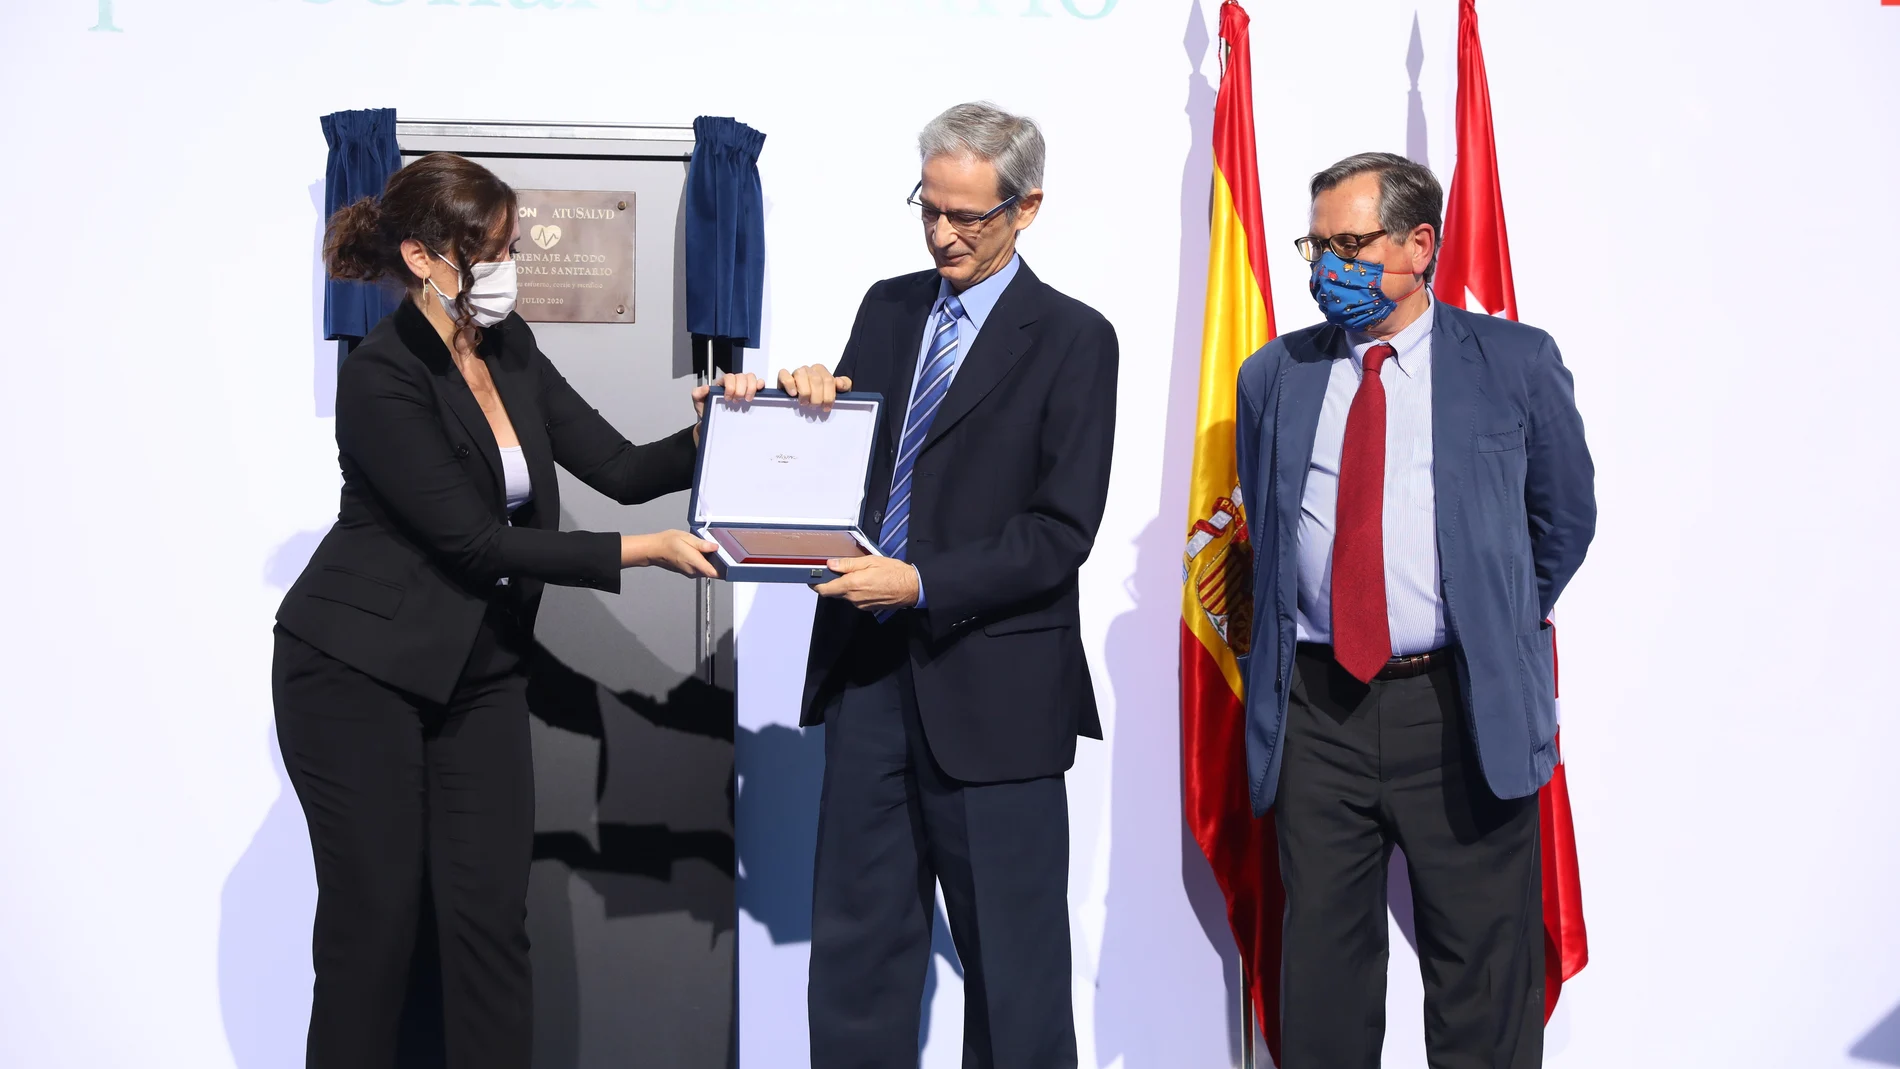 Díaz Ayuso entrega la placa a José Manuel Casas Rojo, de la SEMI, en presencia de Marhuenda